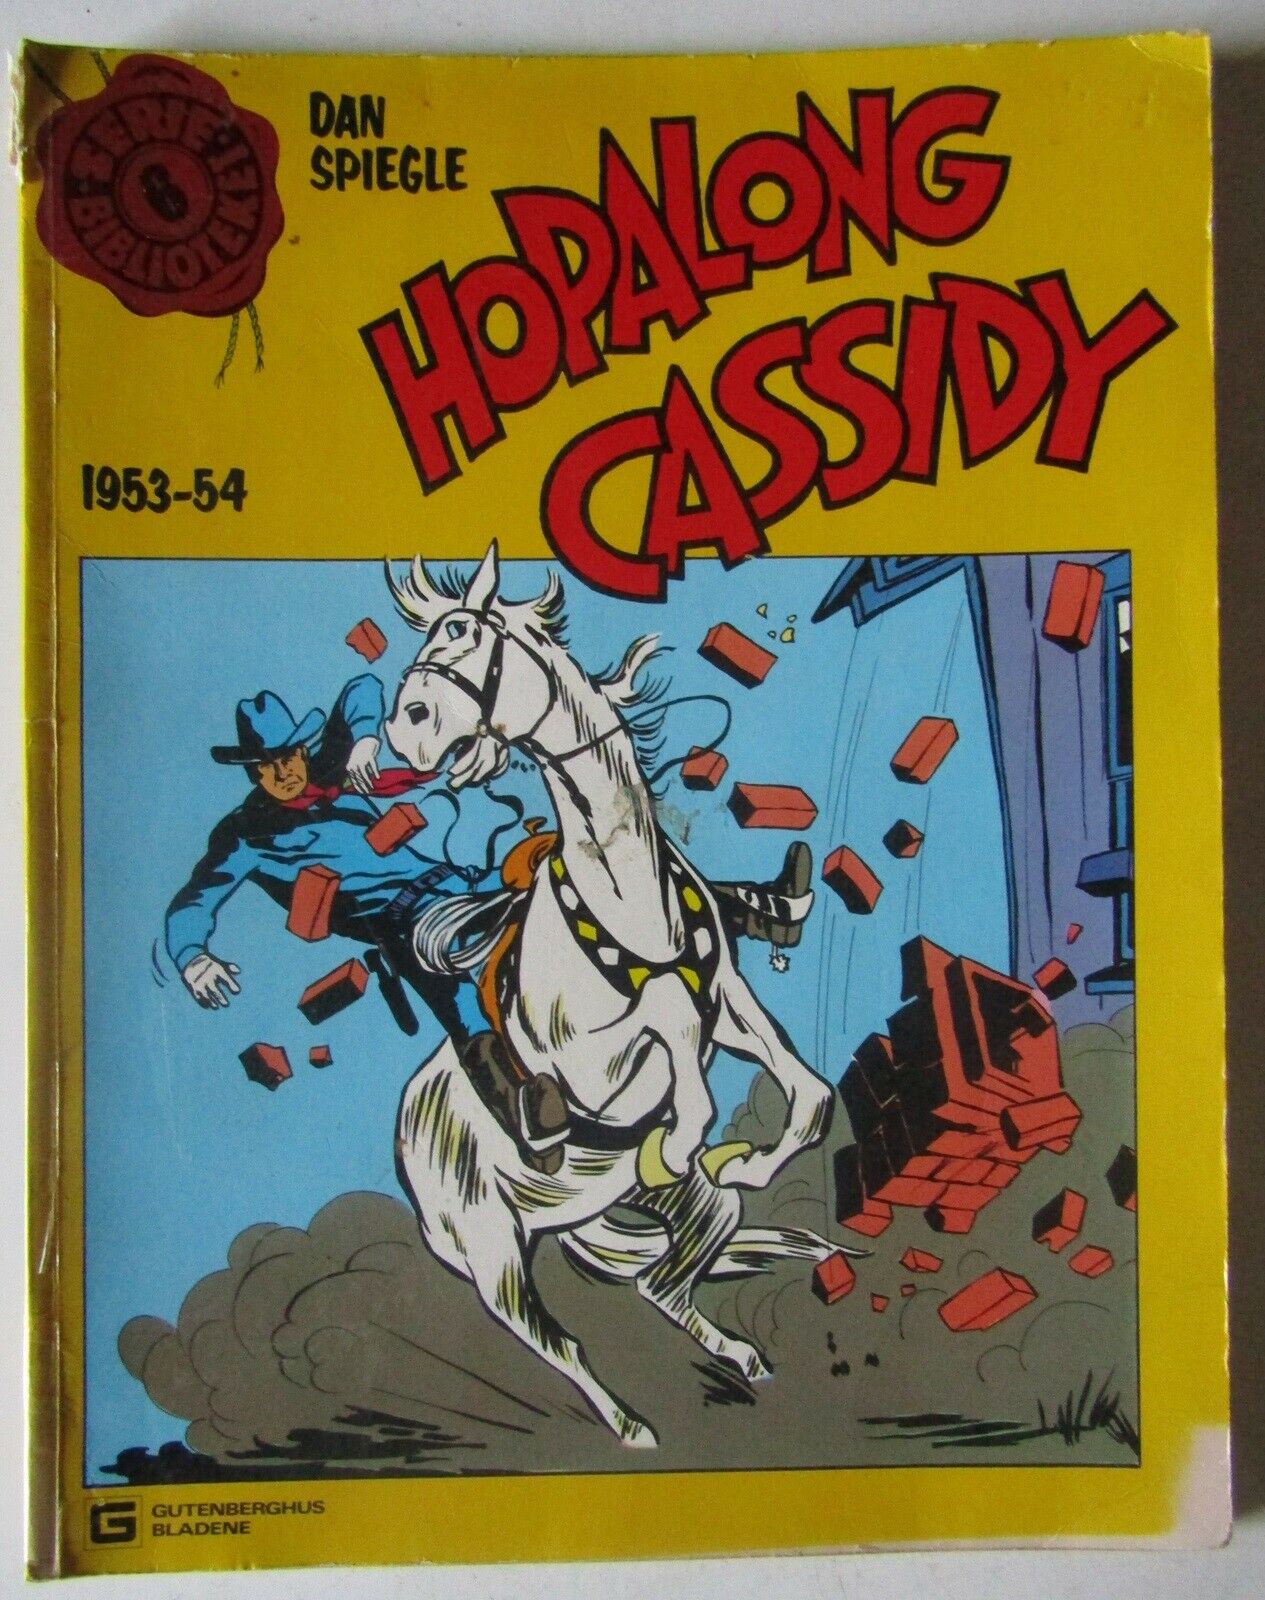 Serie-Biblioteket 6: Hopalong Cassidy, Dan Spiegle,